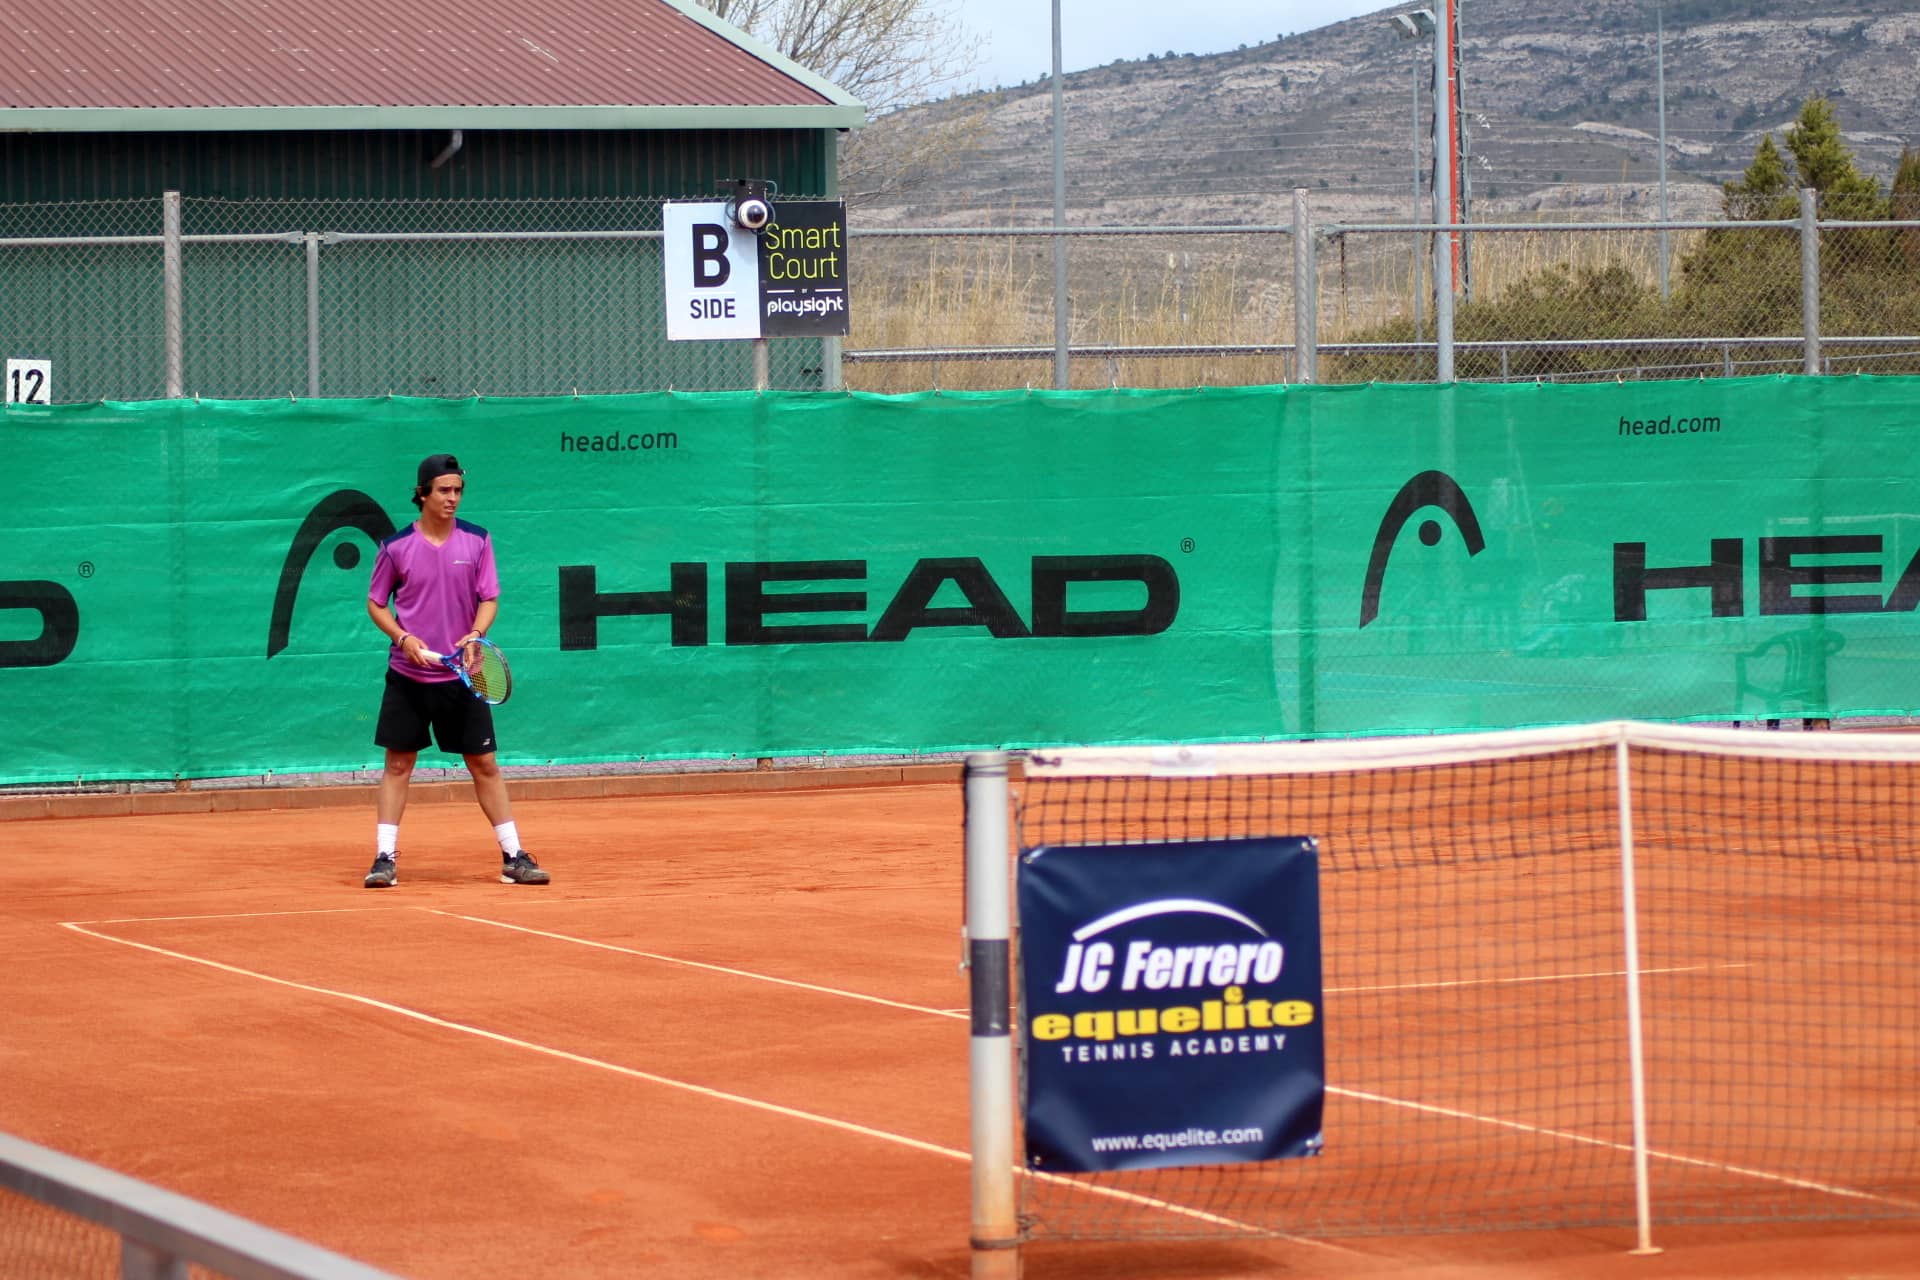 Arranca la competición en el ITF Junior G1 Juan Carlos Ferrero